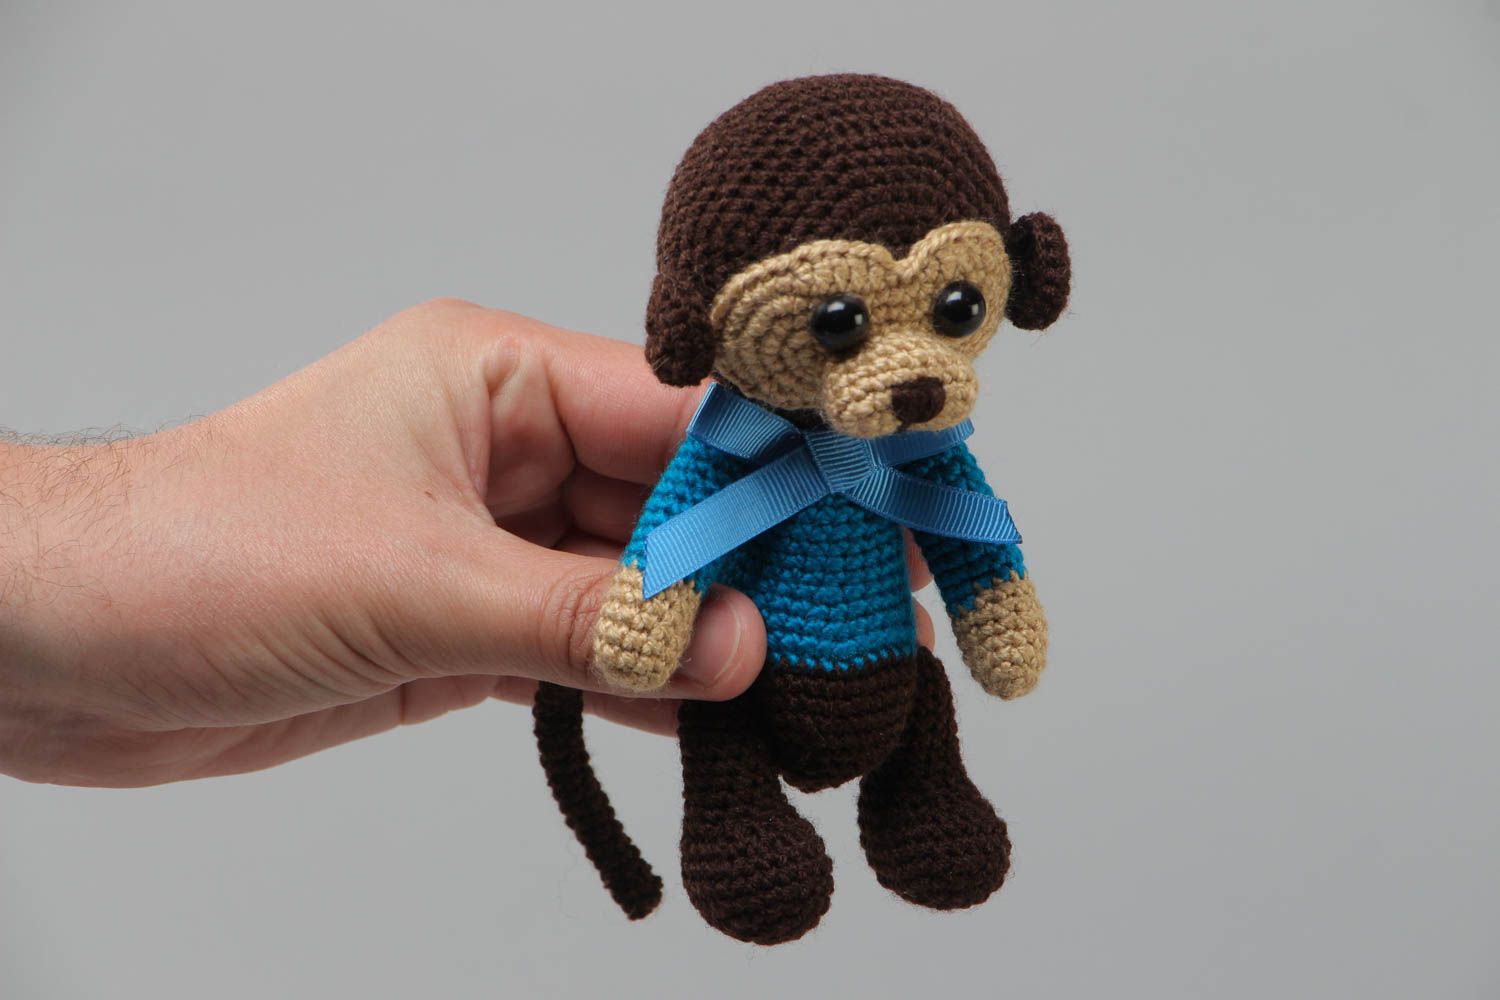 Мягкая вязаная игрушка в виде обезьянки в голубом свитере маленькая хэнд мейд фото 5